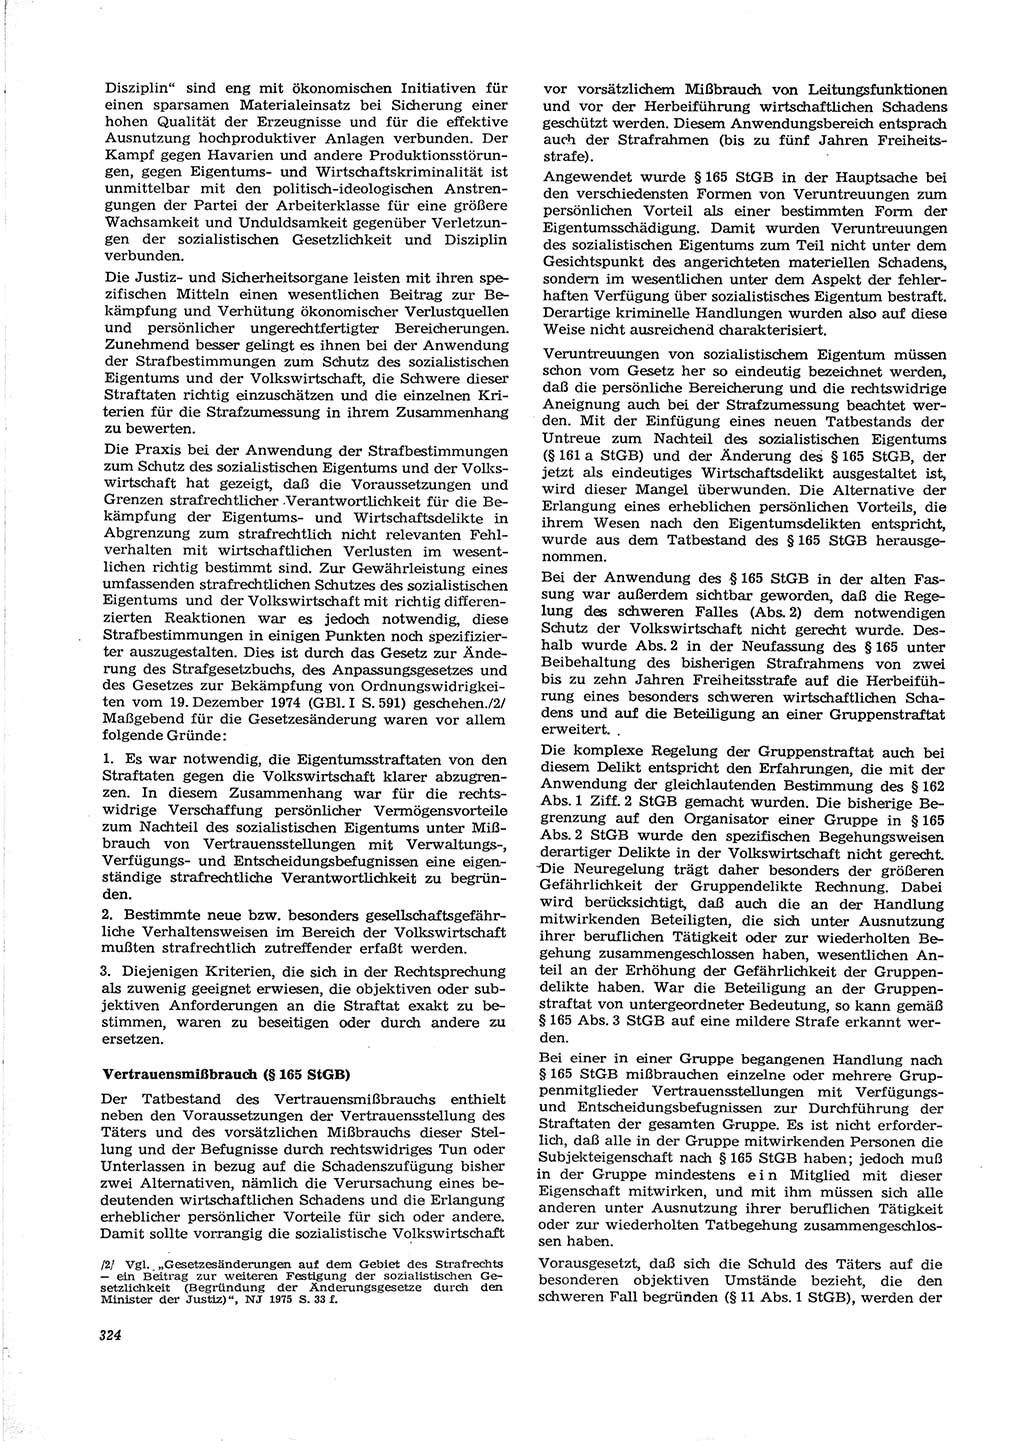 Neue Justiz (NJ), Zeitschrift für Recht und Rechtswissenschaft [Deutsche Demokratische Republik (DDR)], 29. Jahrgang 1975, Seite 324 (NJ DDR 1975, S. 324)